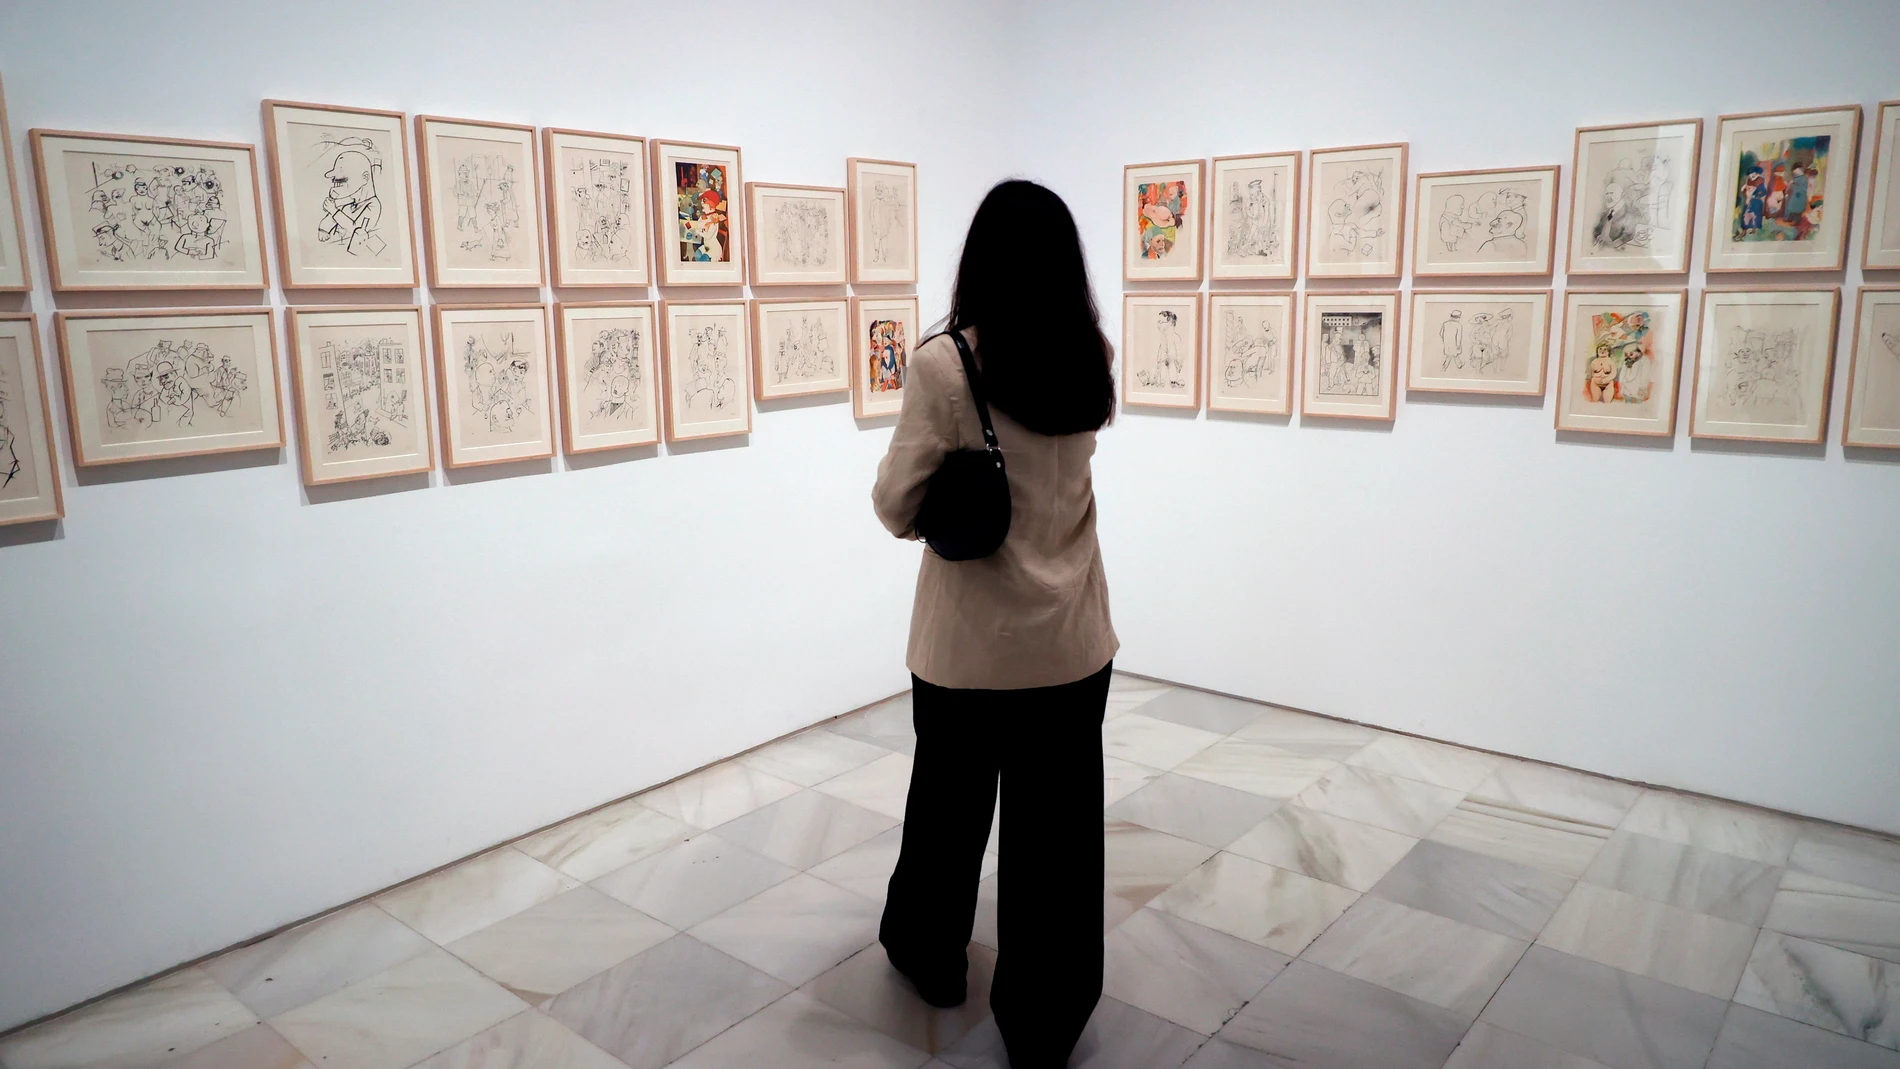 Una visitante observa la obra "Ecceomo portafolio", en el Museo Reina Sofía